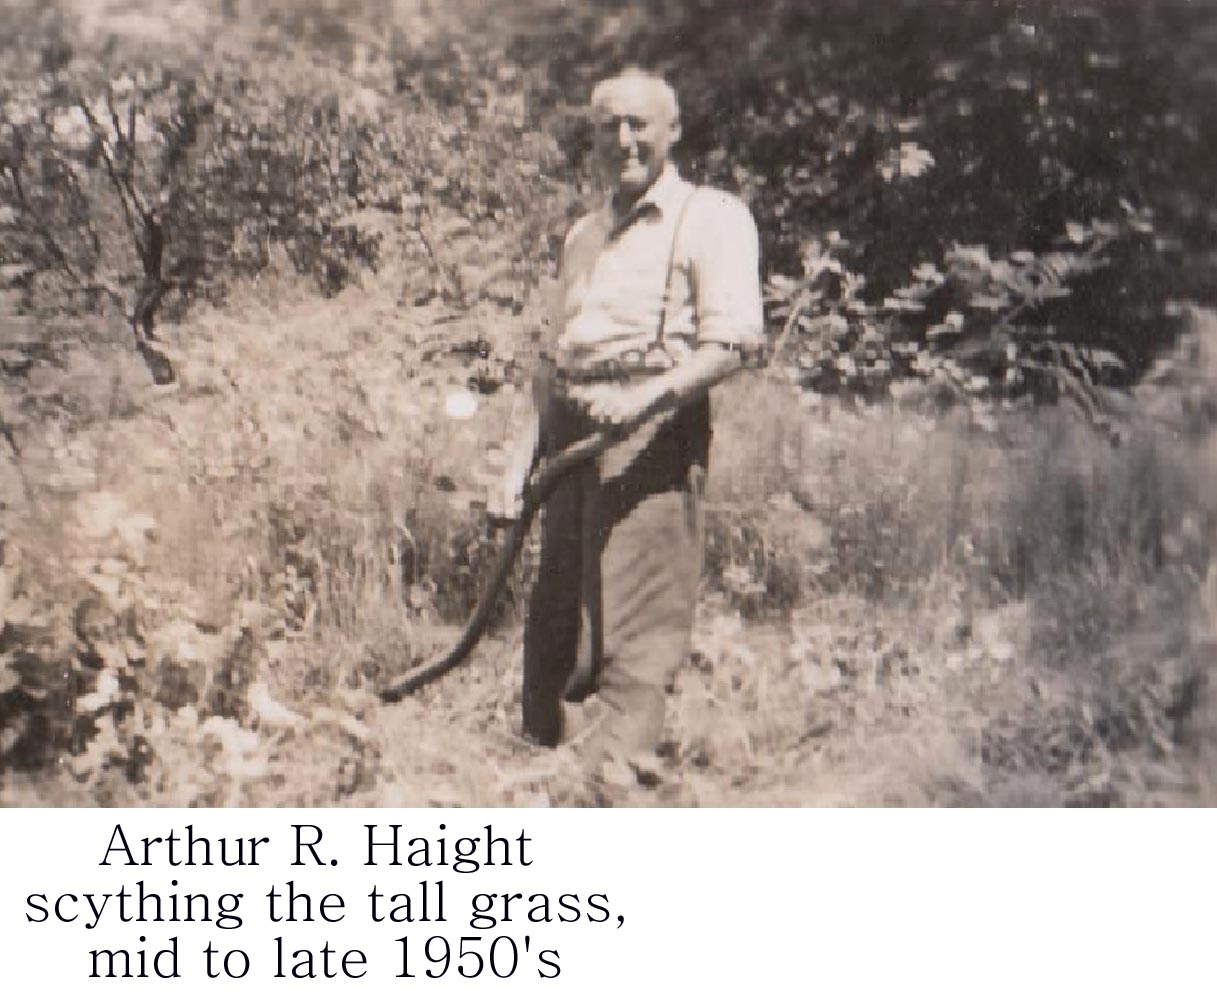 Arthur Robert Haight